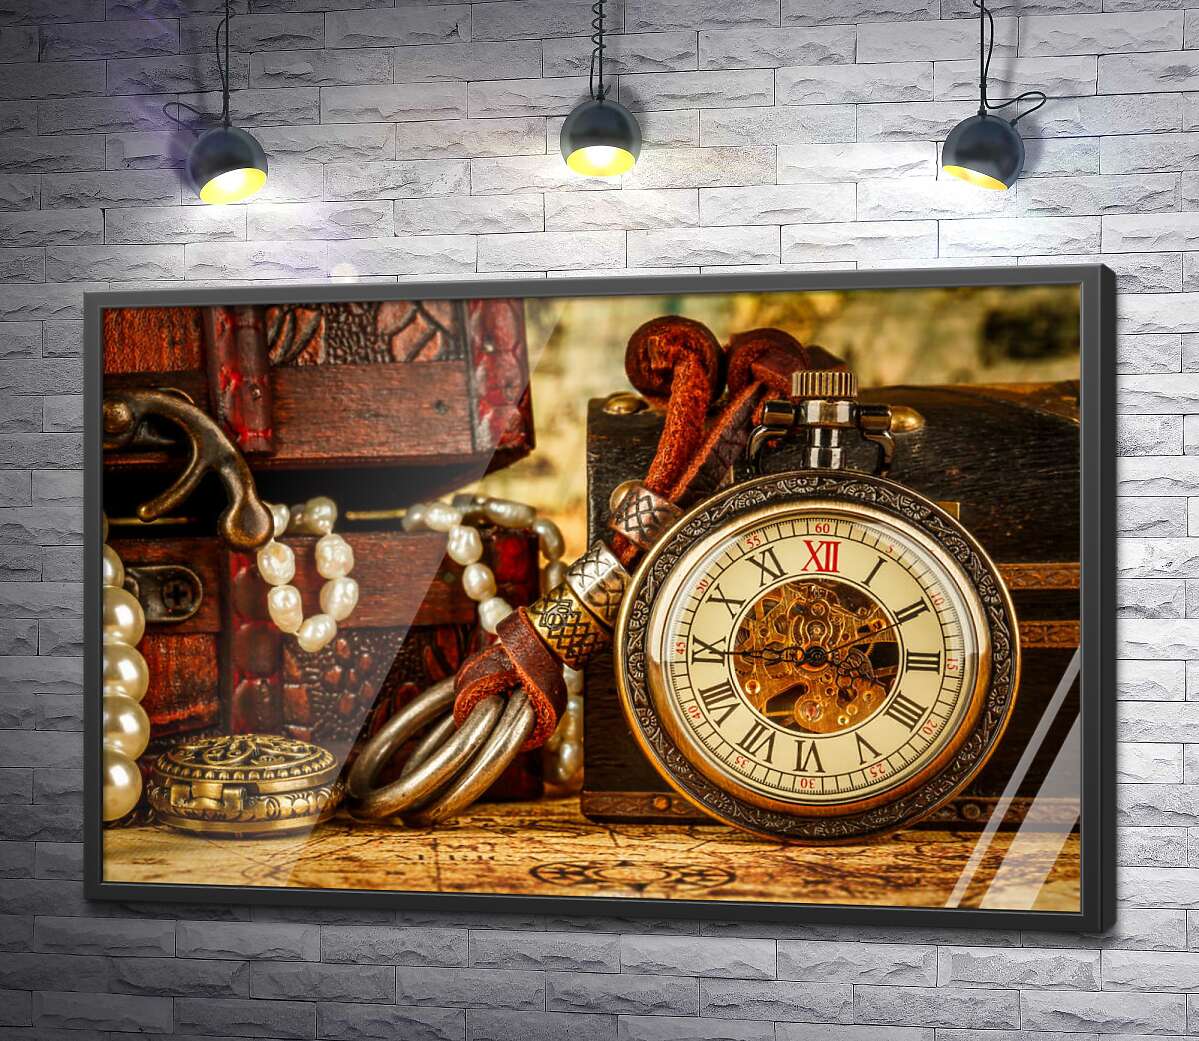 постер Старинные часы среди шкатулок с морскими сокровищами